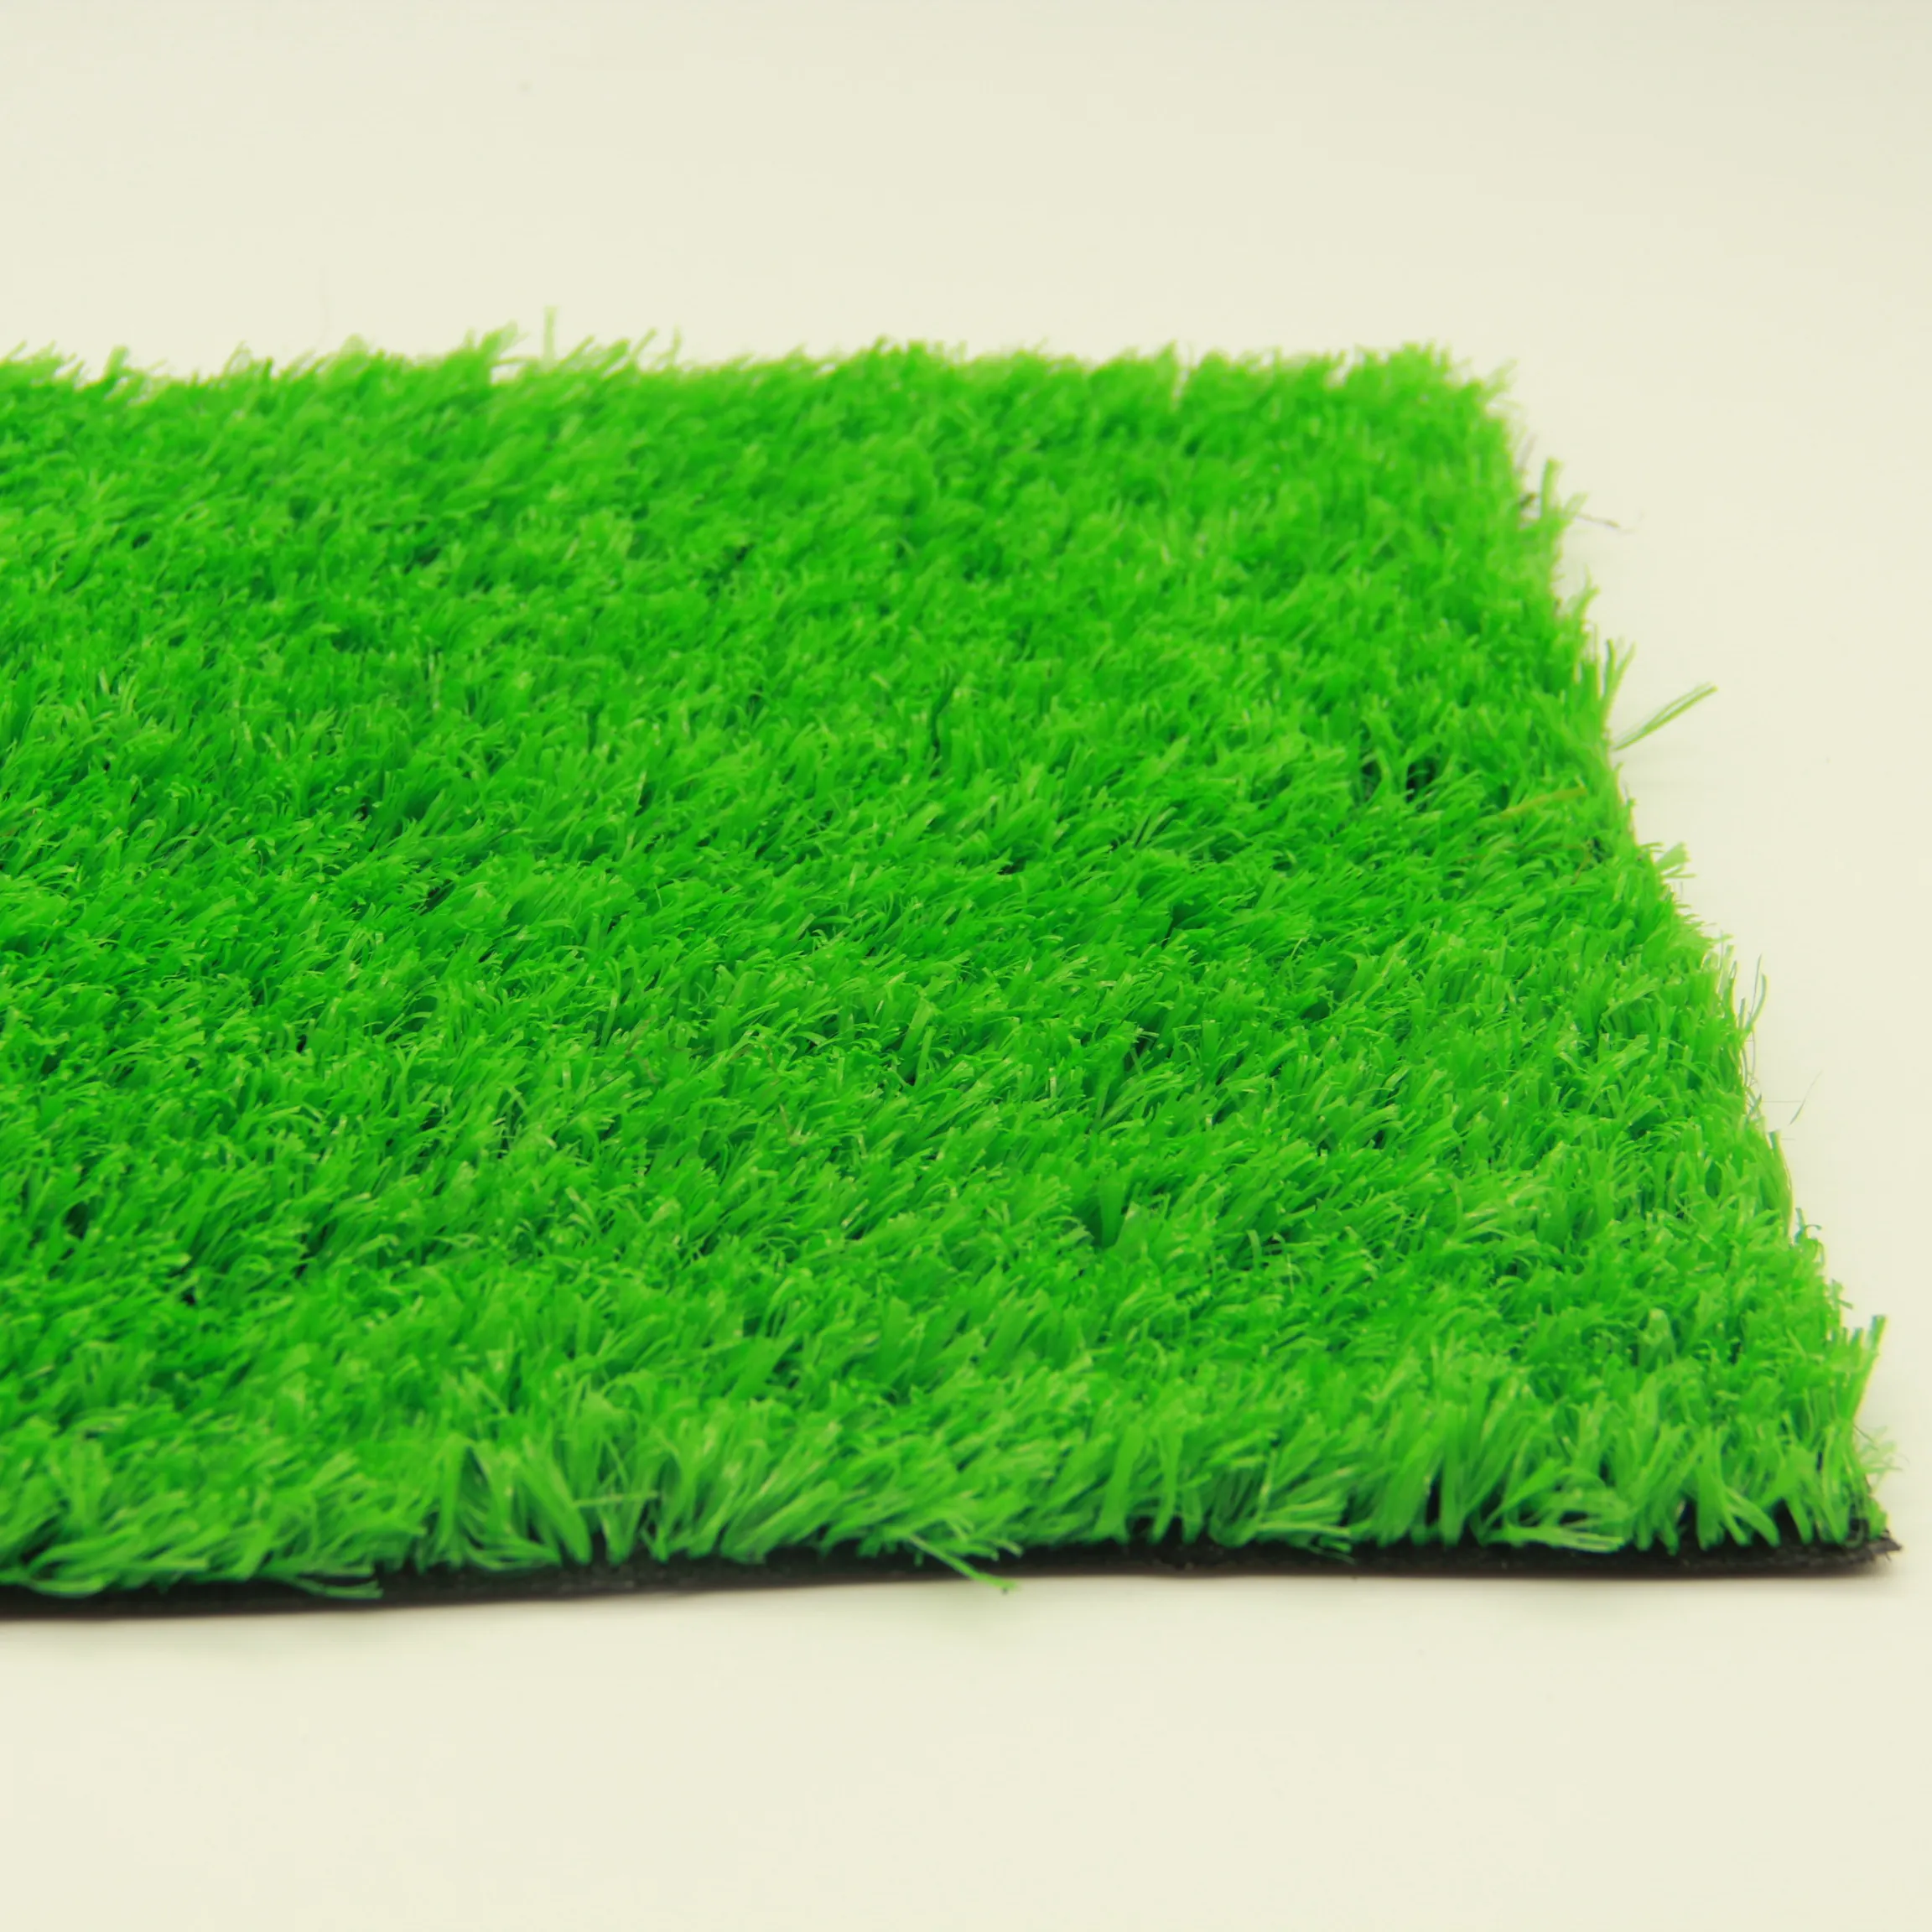 garden ornaments green color artificial grass flooring for home and garden